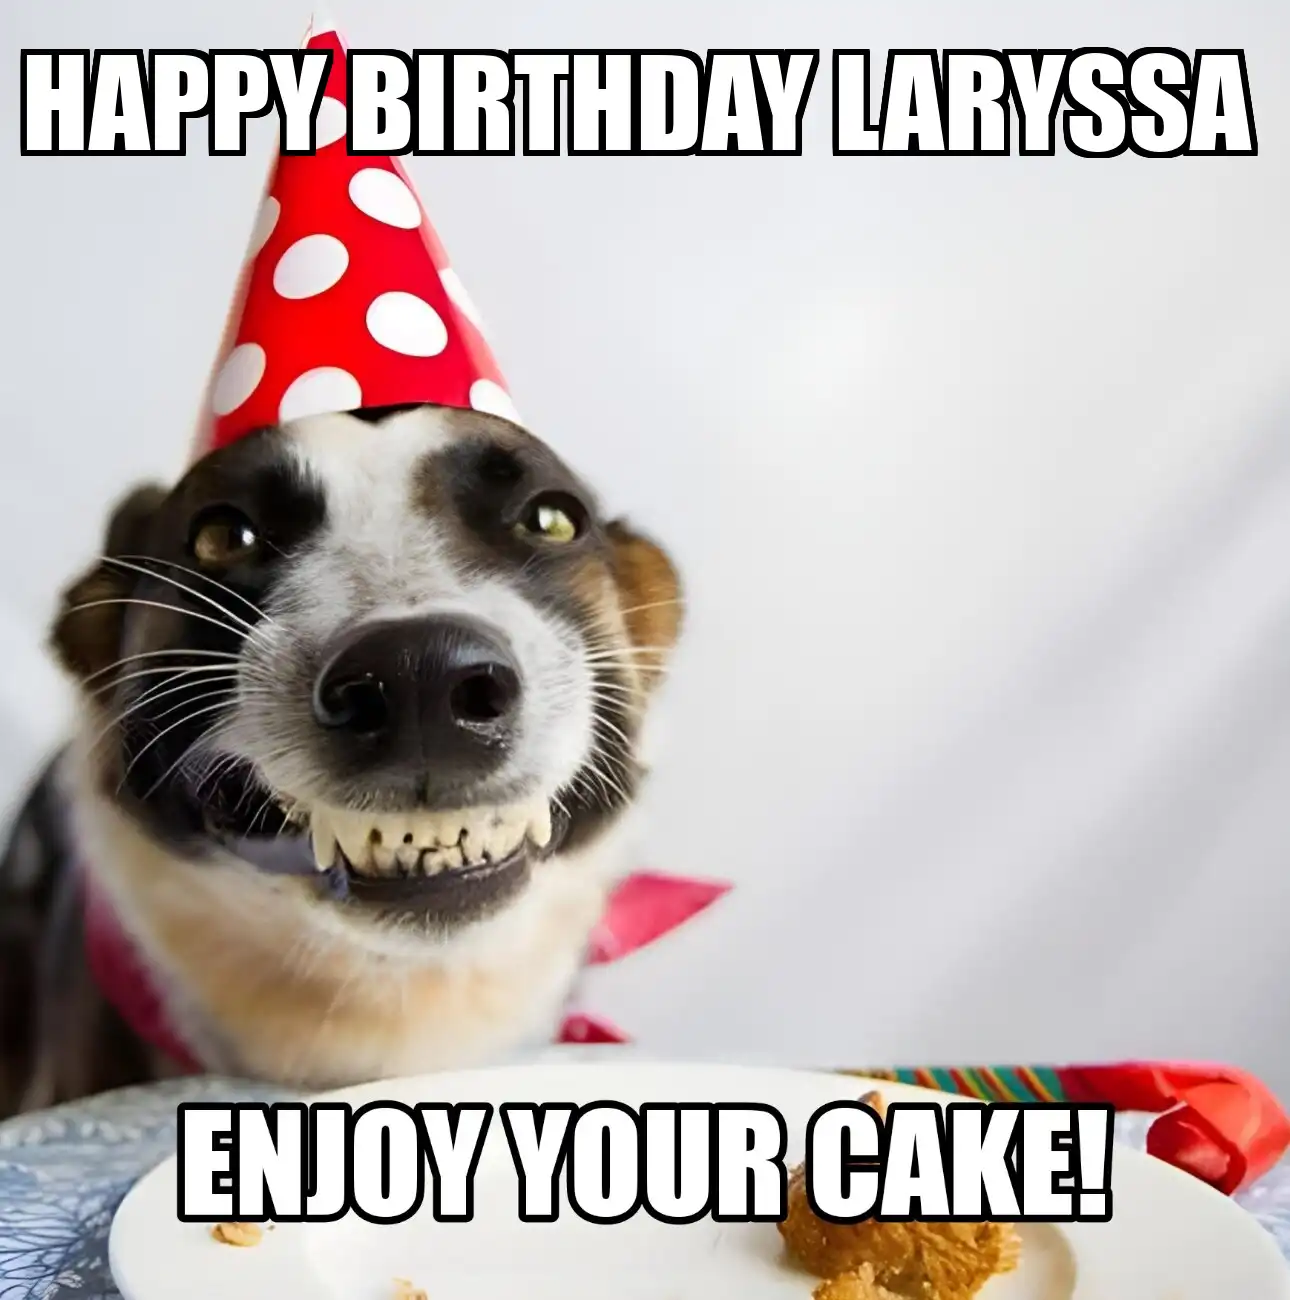 Happy Birthday Laryssa Enjoy Your Cake Dog Meme